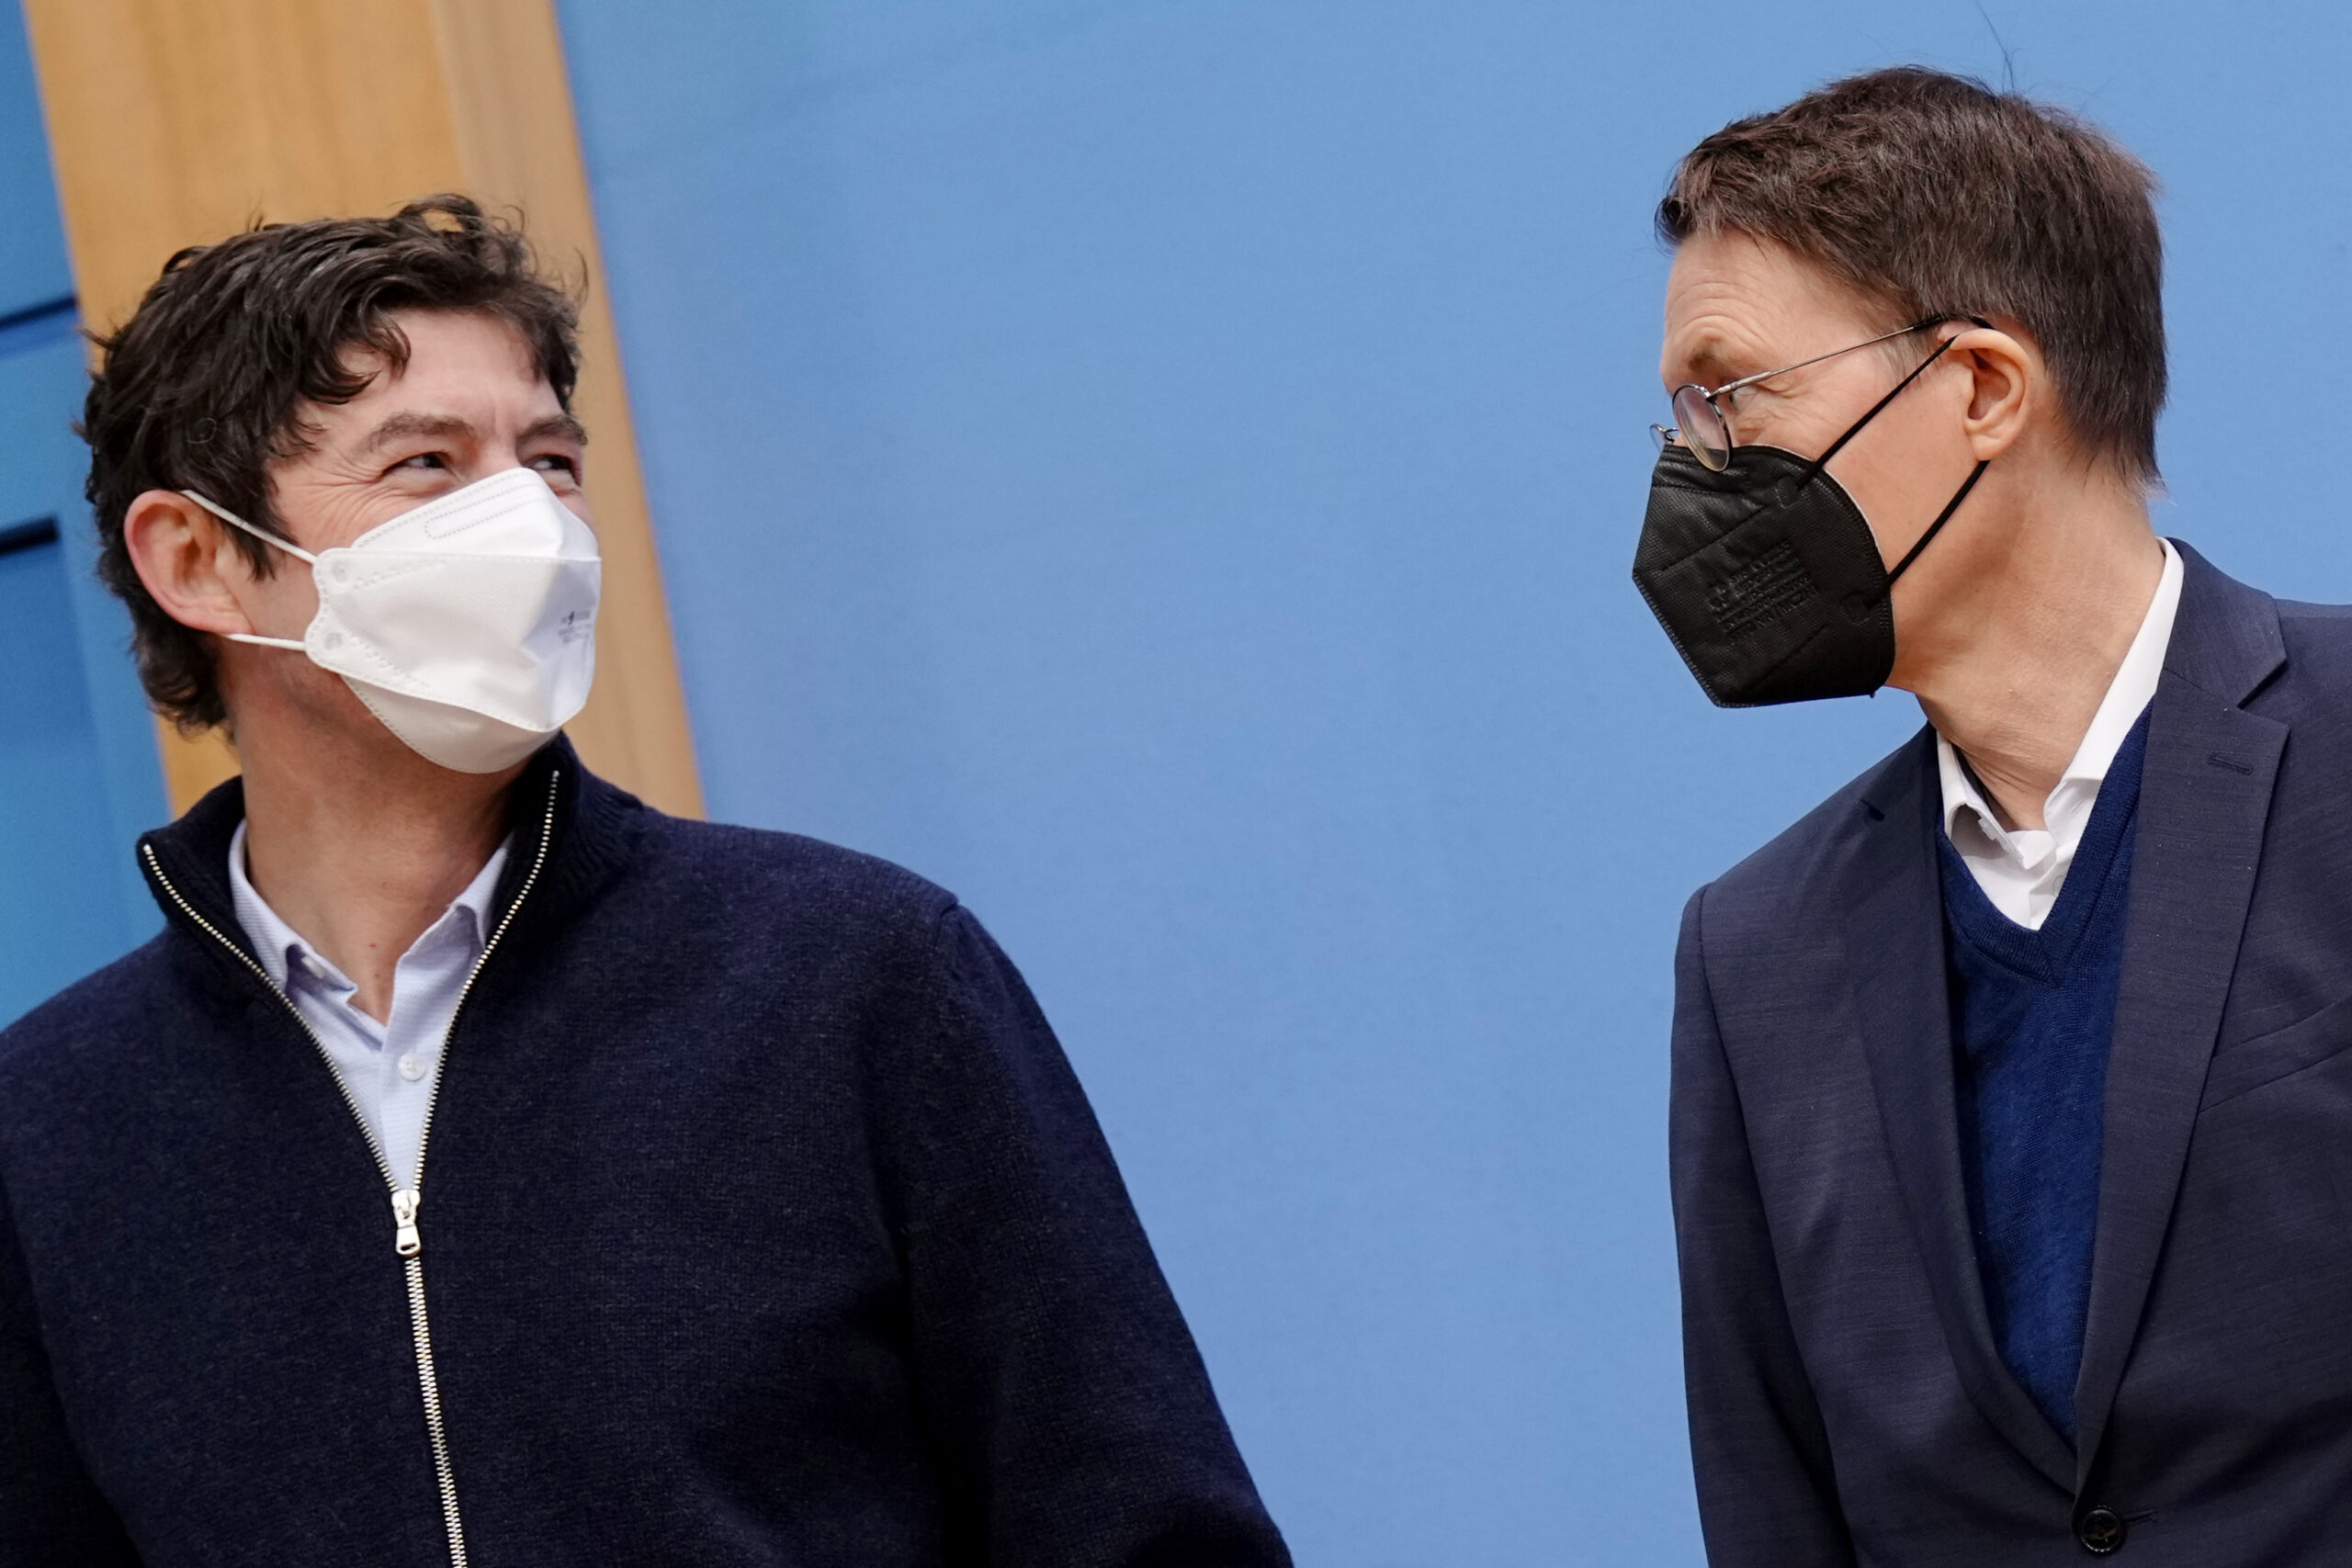 Virologe Christian Drosten (l.) und Gesundheitsminister Karl Lauterbach (r.) im Januar. Jetzt verkündet der SPD-Politiker Drostens Austritt aus dem Sachverständigenausschuss für die Corona-Maßnahmen.